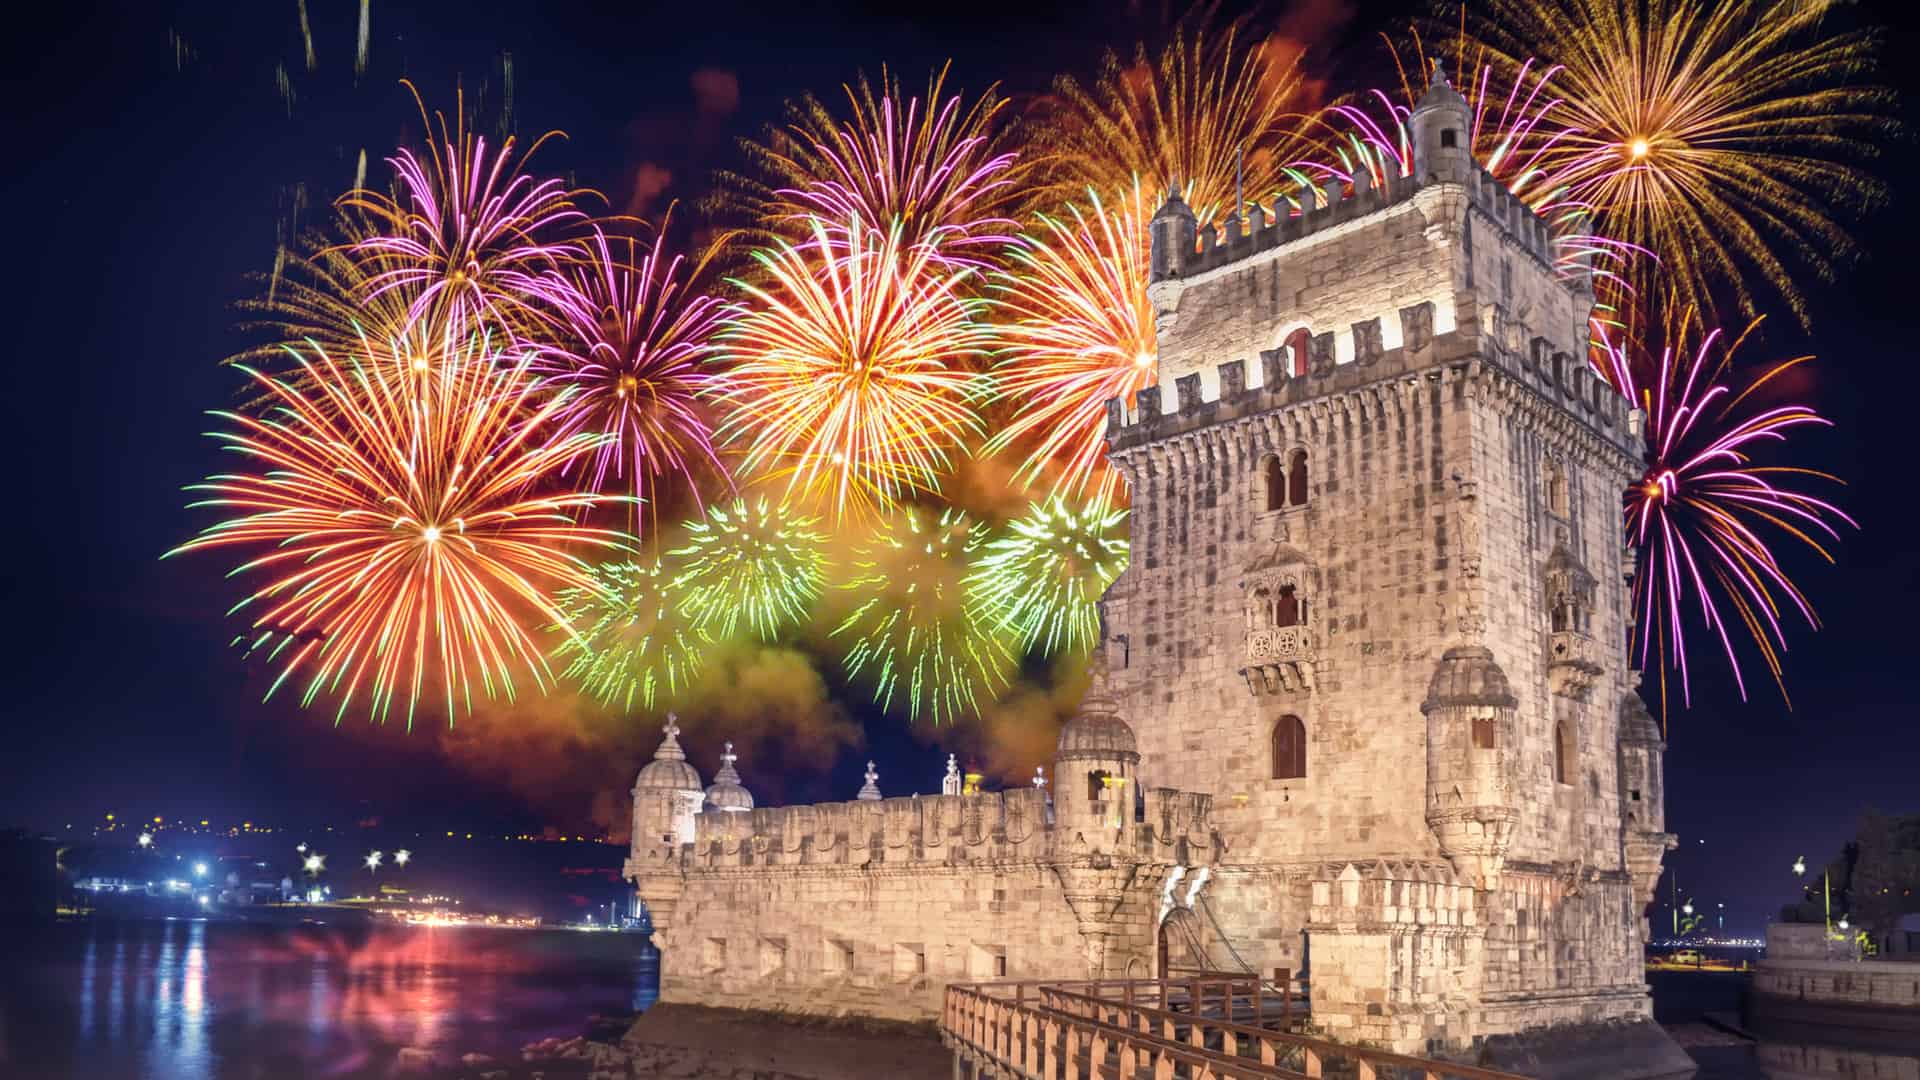 Fireworks above Belem Tower in Lisbon, Portugal